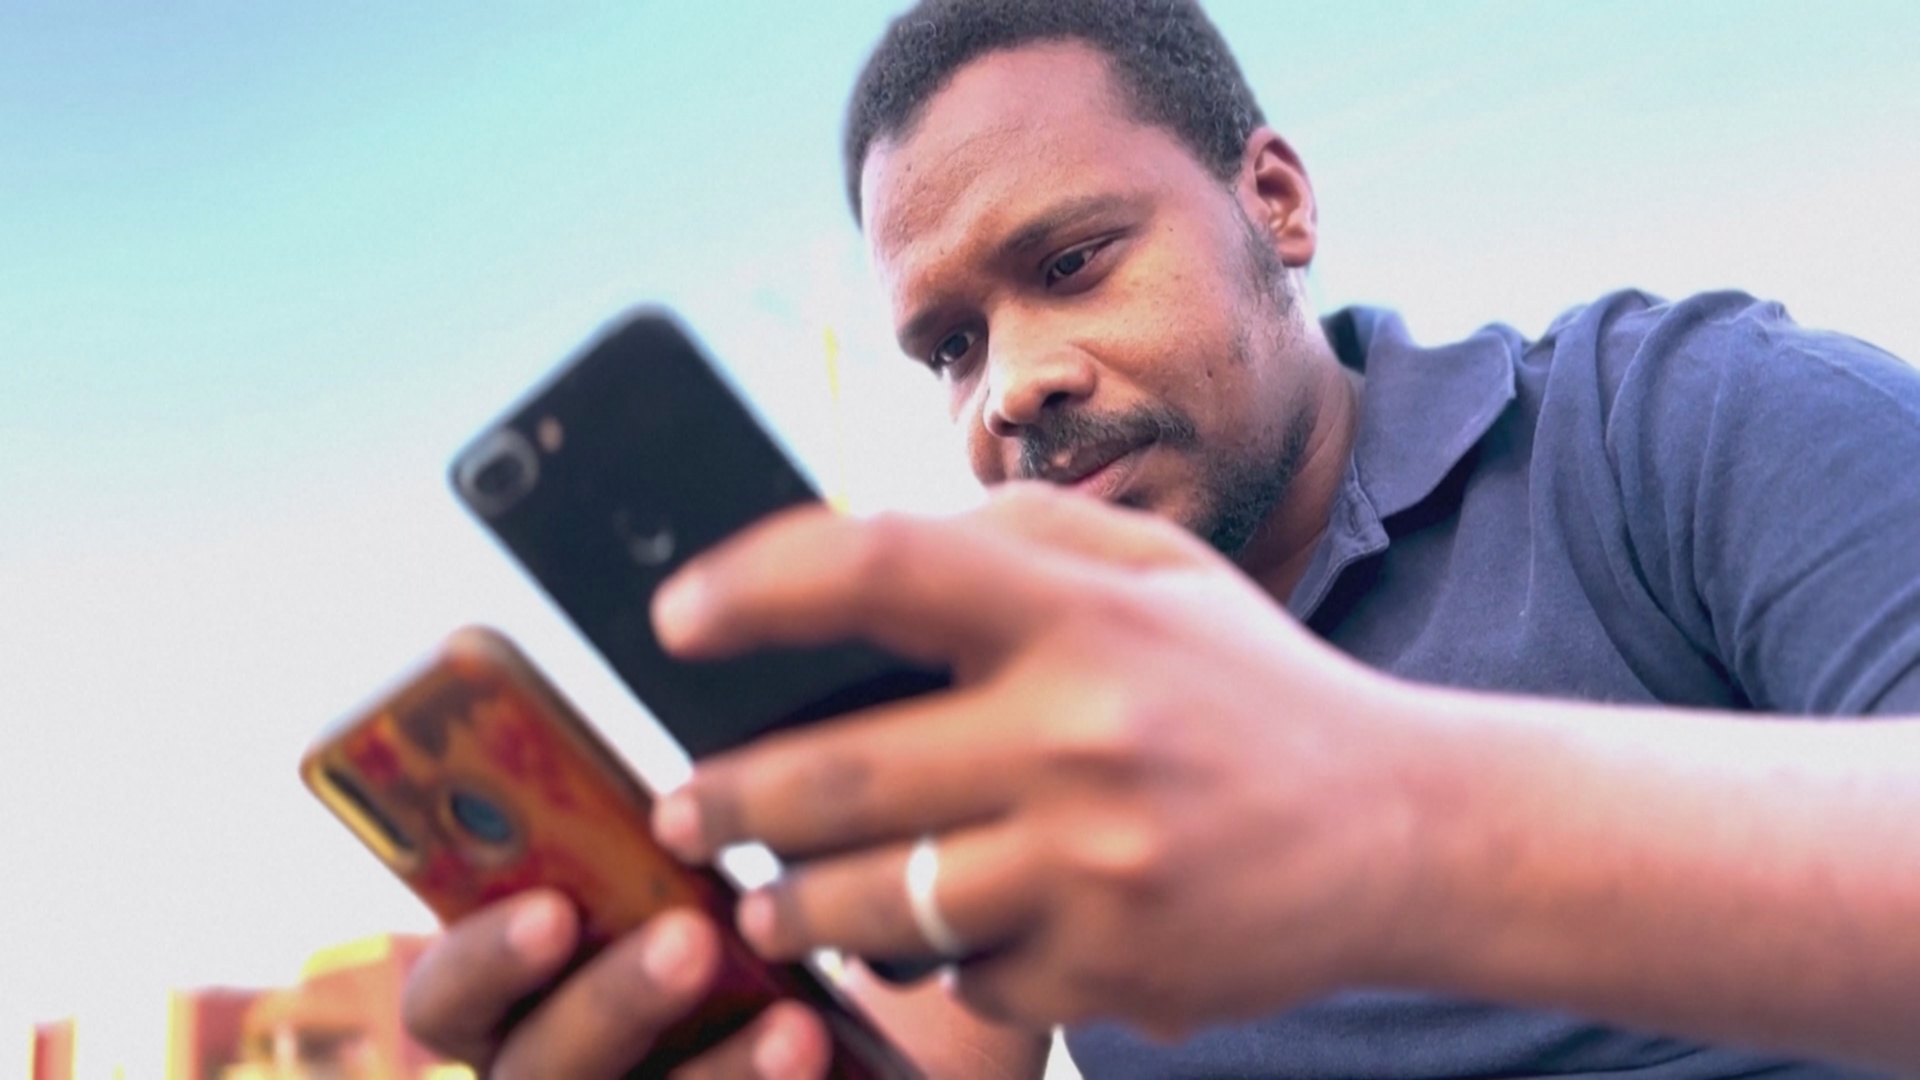 Суданцы выходят в Интернет через Starlink, поскольку мобильной связи нет